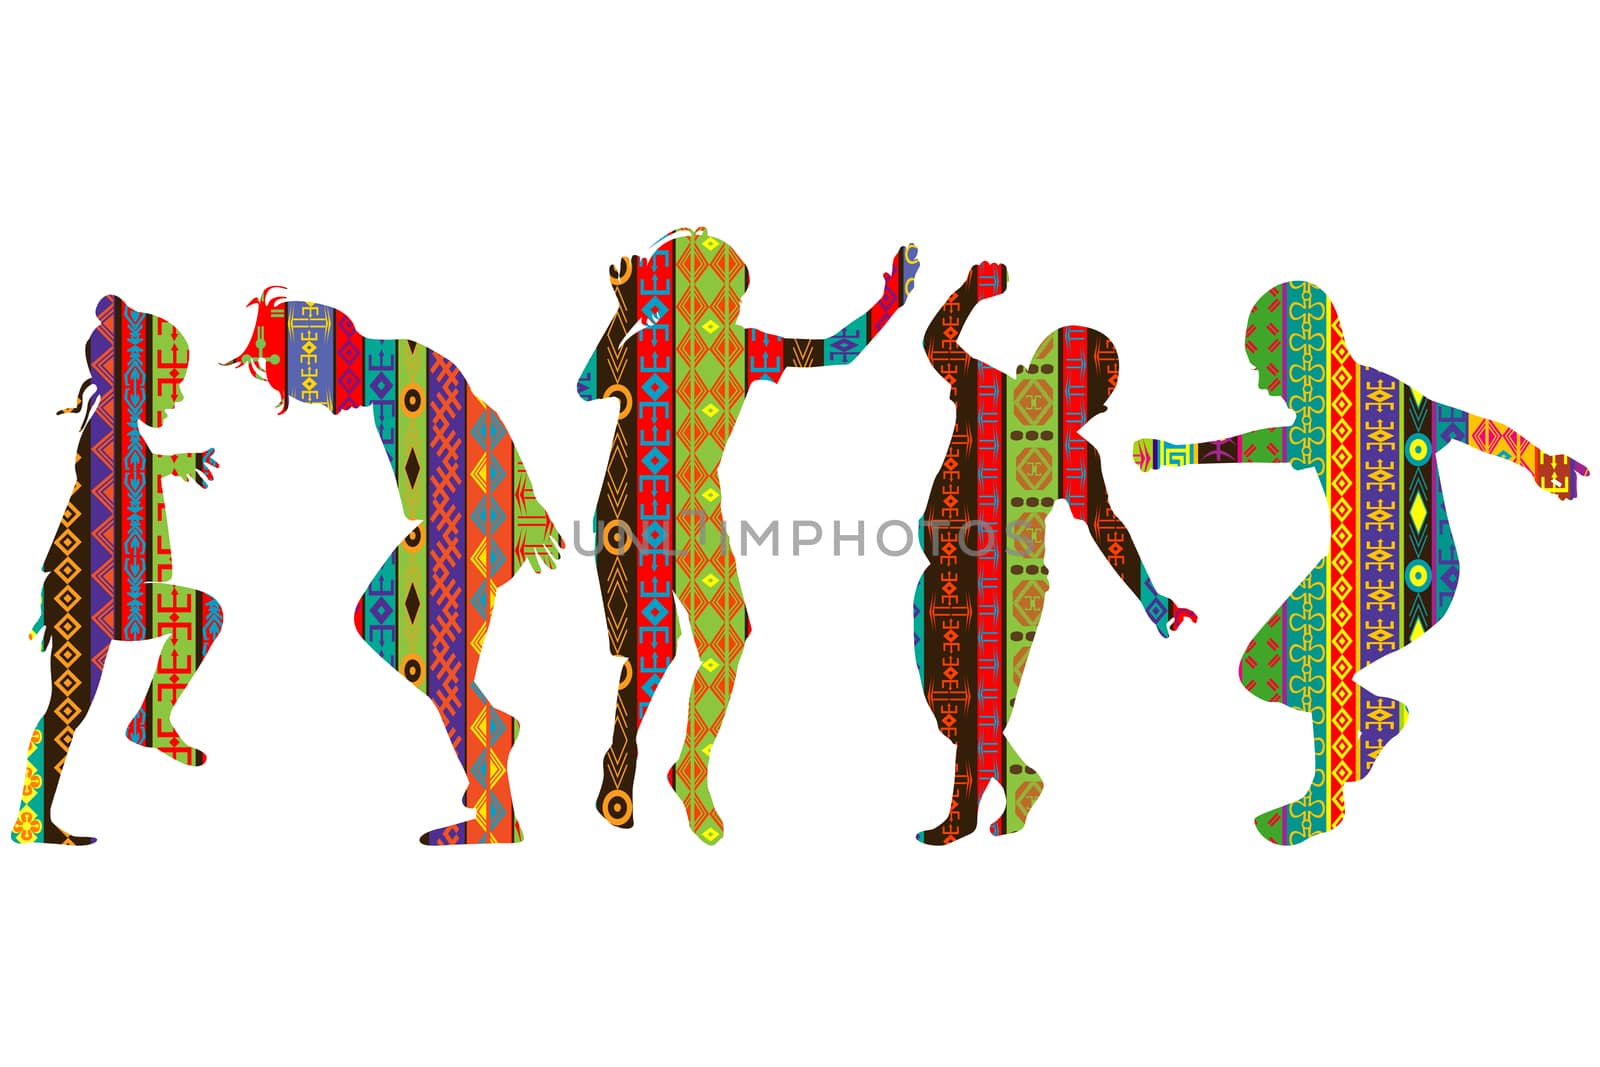 Children silhouettes in ethnic motifs pattern by hibrida13